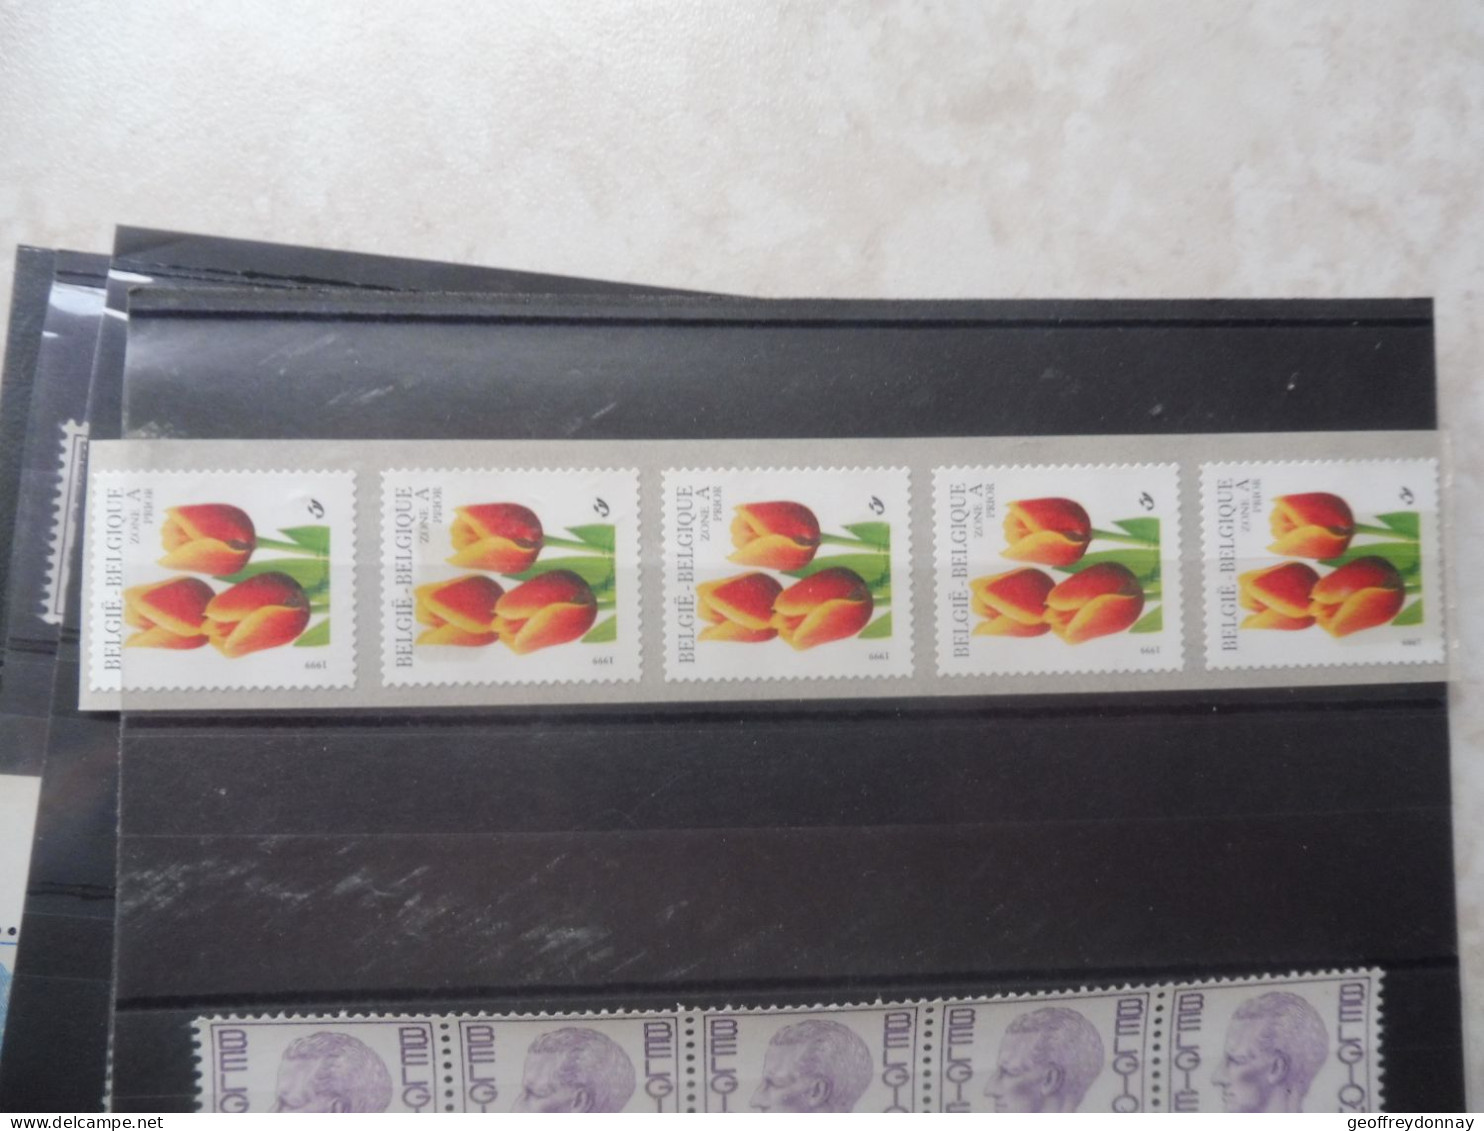 Belgique Belgie Bande Rouleau Rolzegels R 93 Parfait Etat Mnh ** Neuf  Baudouin Boudewijn - Coil Stamps